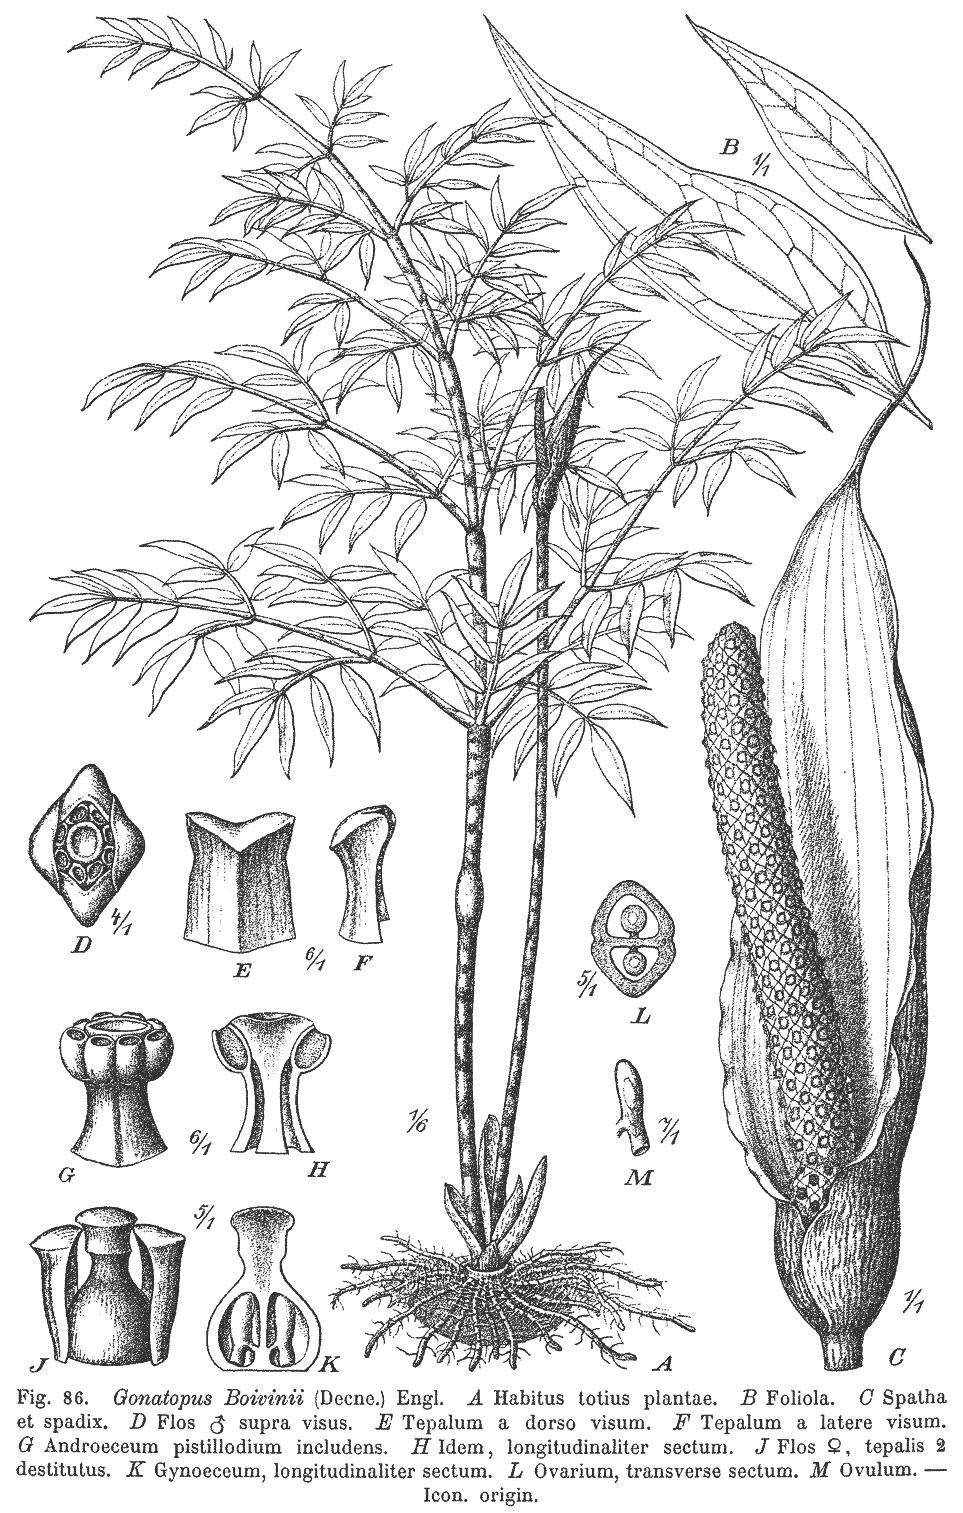 Fig. 86: Gonatopus boivinii